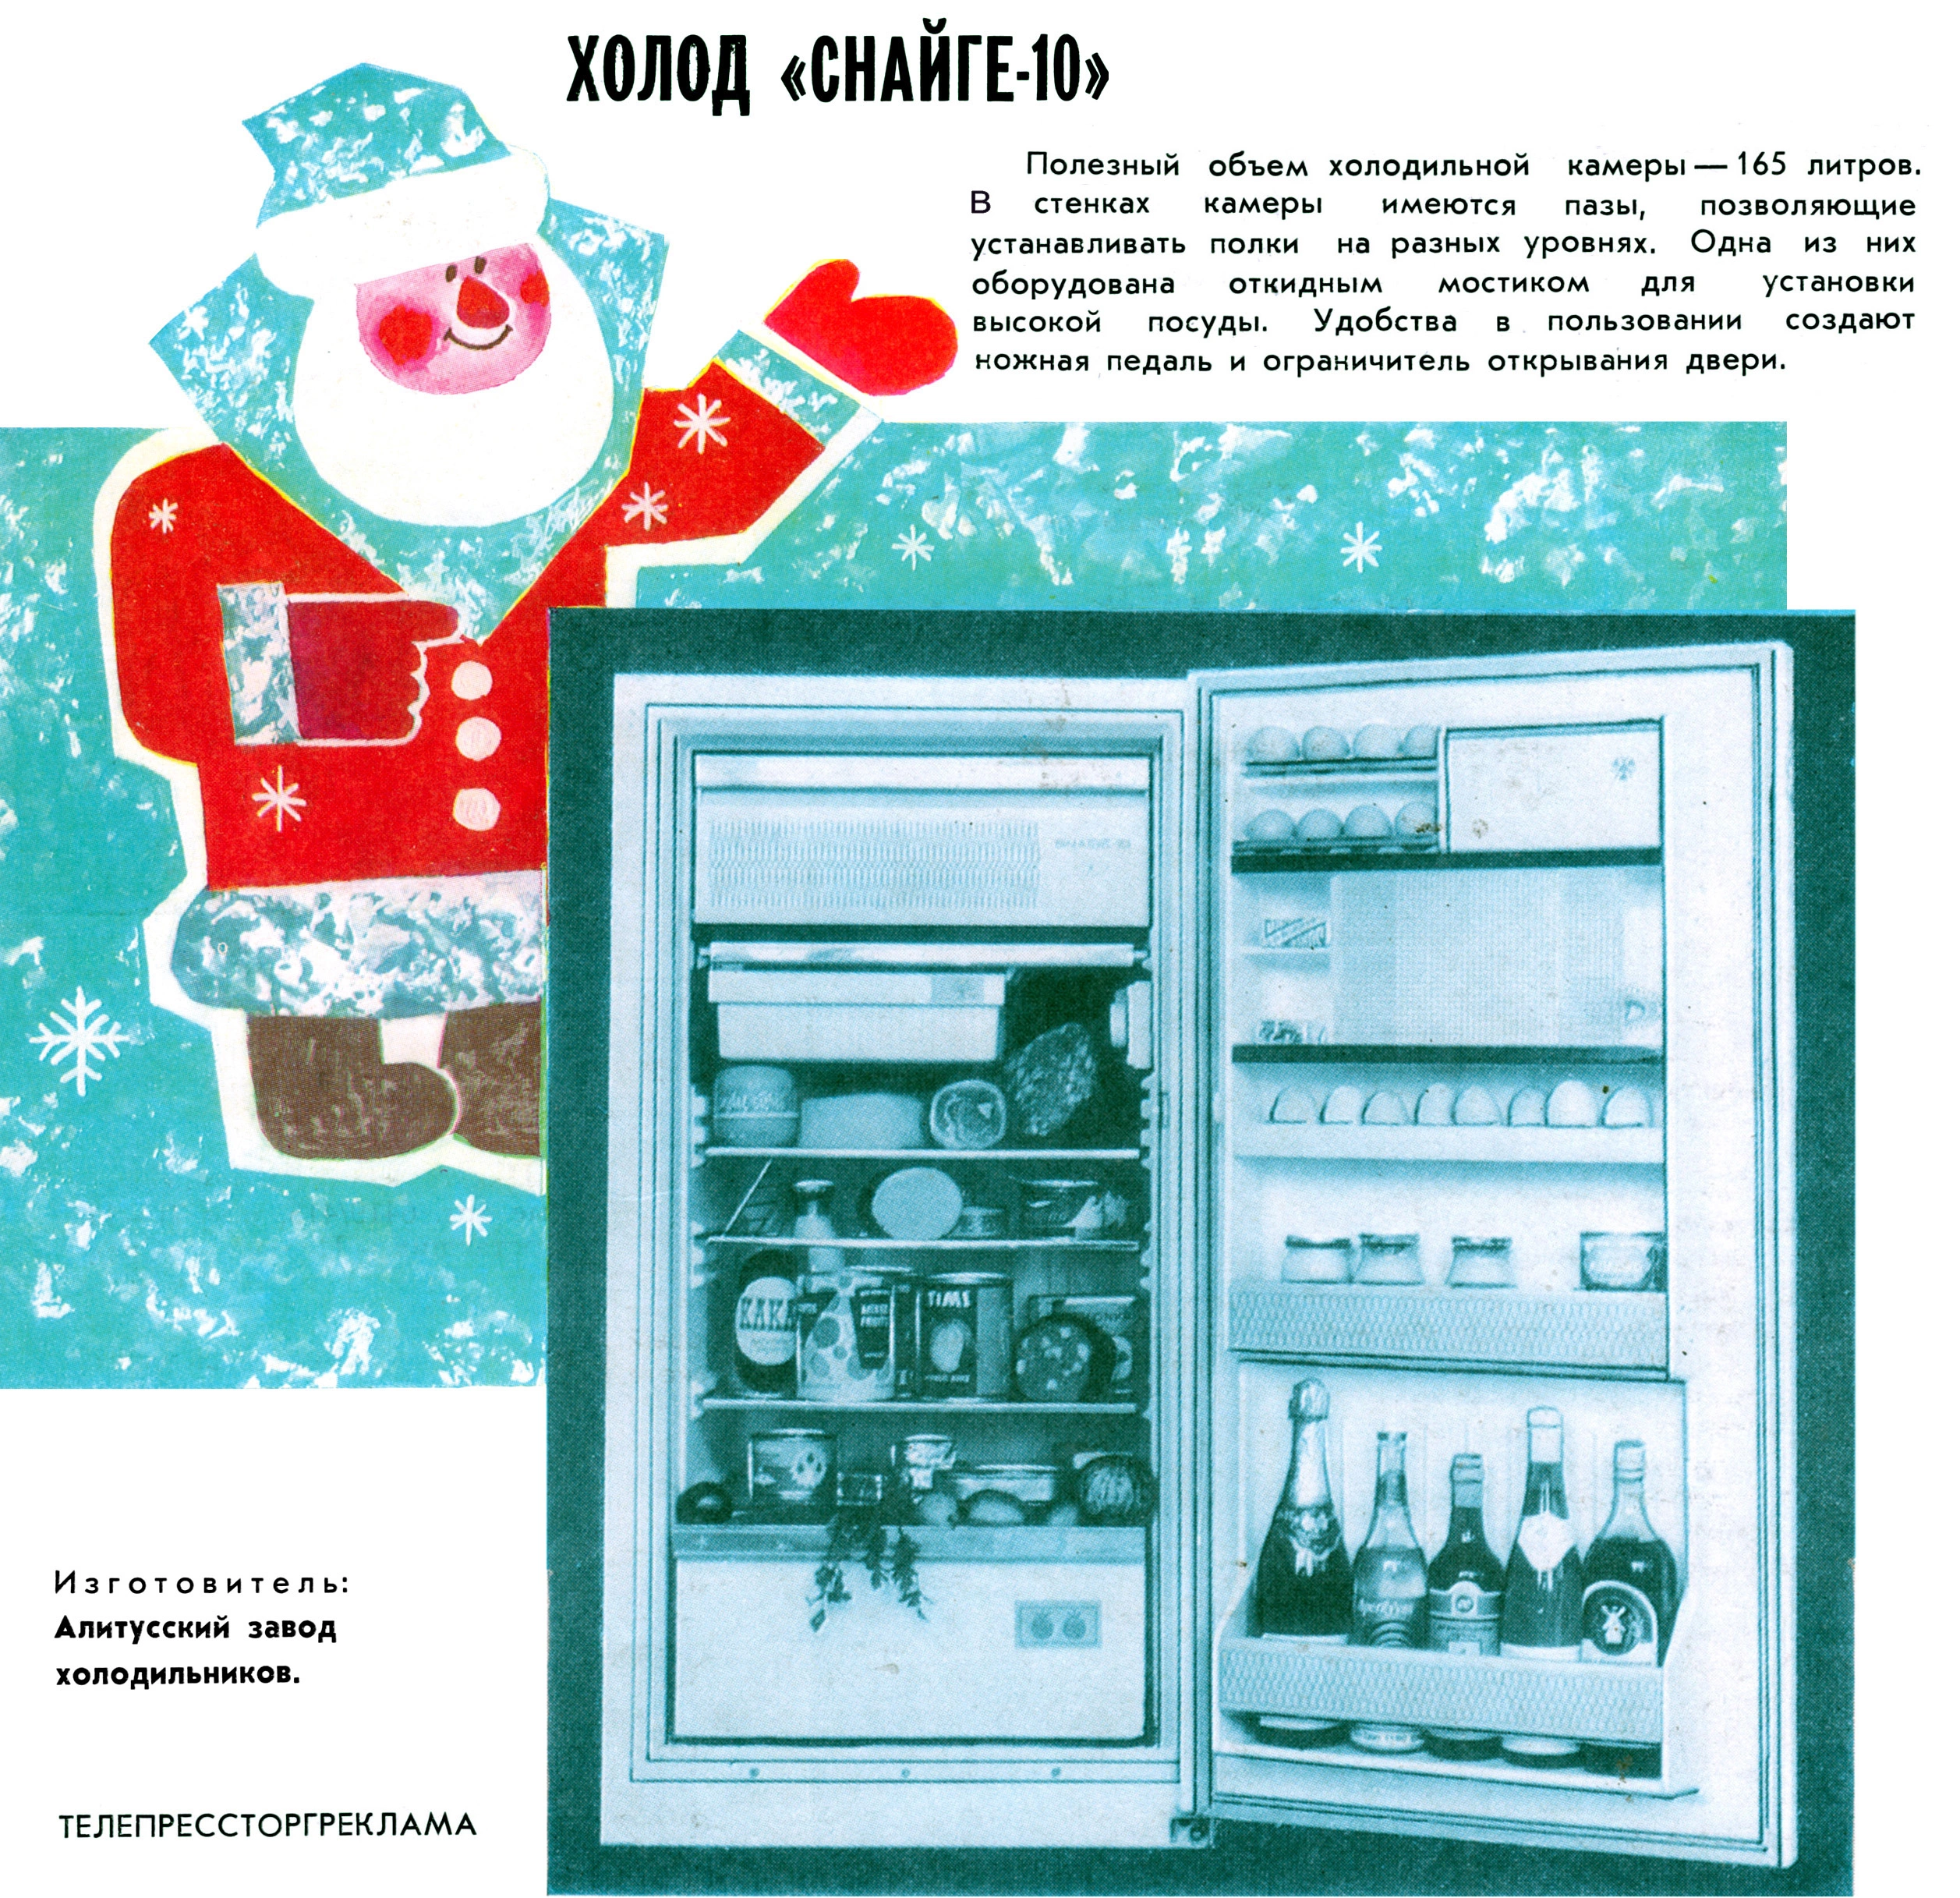 <p>Snaige&nbsp;&mdash; литовская компания по производстве холодильников. Первые холодильники сошли с конвейера Алитусского машиностроительного завода в 1963 году и с тех пор постоянно модернизировались. В том числе обзаводились пазами, которые позволяли устанавливать полки на разных уровнях, и откидными мостиками для высокой посуды. К рекламе компания, которая распространяла свою продукцию не только по СССР, но и в другие страны Европы и Азии, особых требований по креативу не предъявляла, поэтому лицом&nbsp;Snaige был рисованный краснощекий Дед Мороз.&nbsp;Реклама из журнала &laquo;Коммерческий вестник&raquo; №&nbsp;12/1976</p>